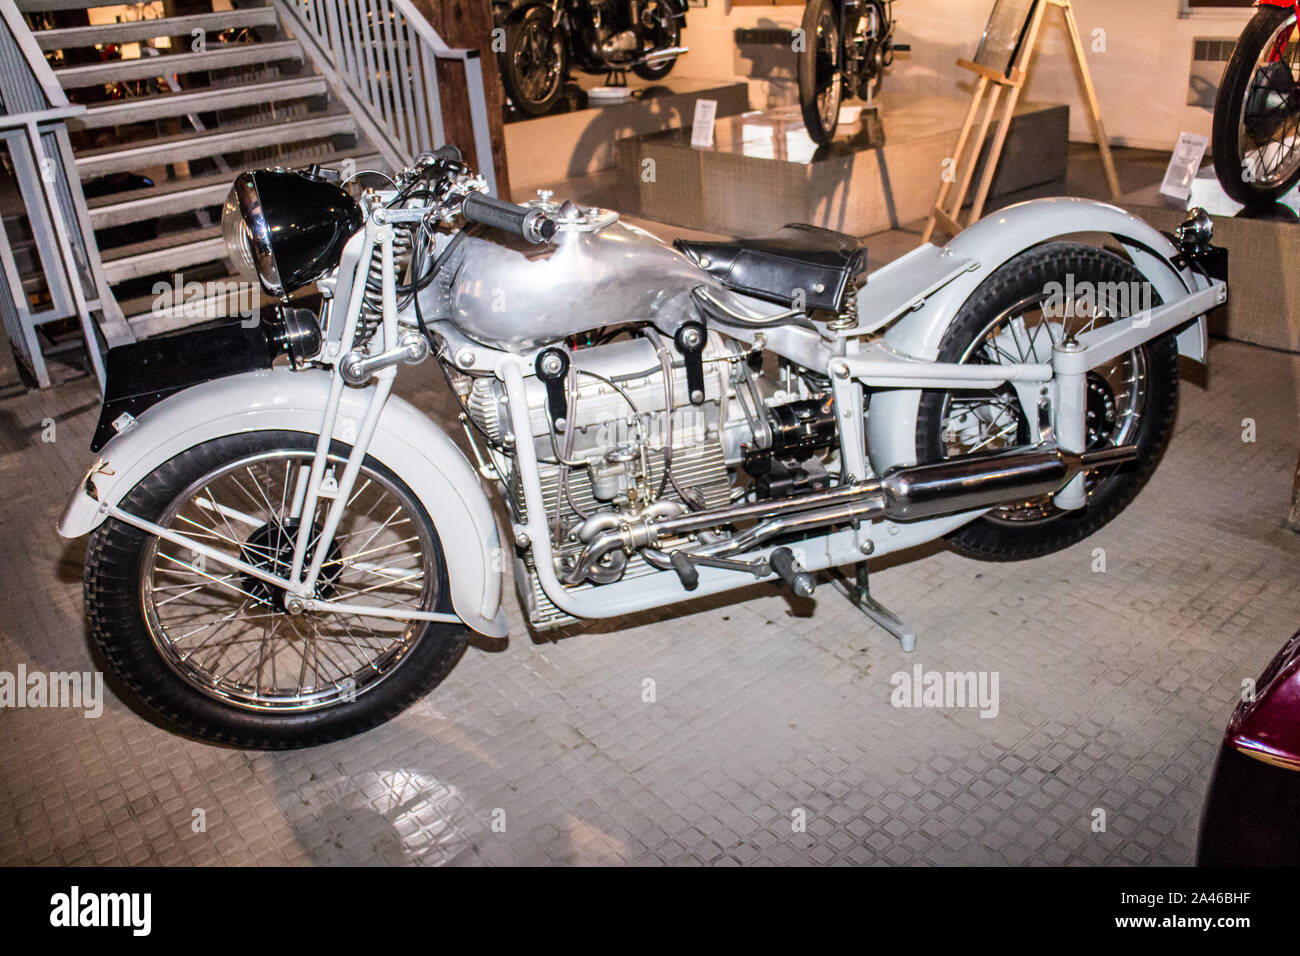 Marsiglia (Francia) Musée de la moto - Motorcycle Museum : MGC (prototipo francese) Foto Stock